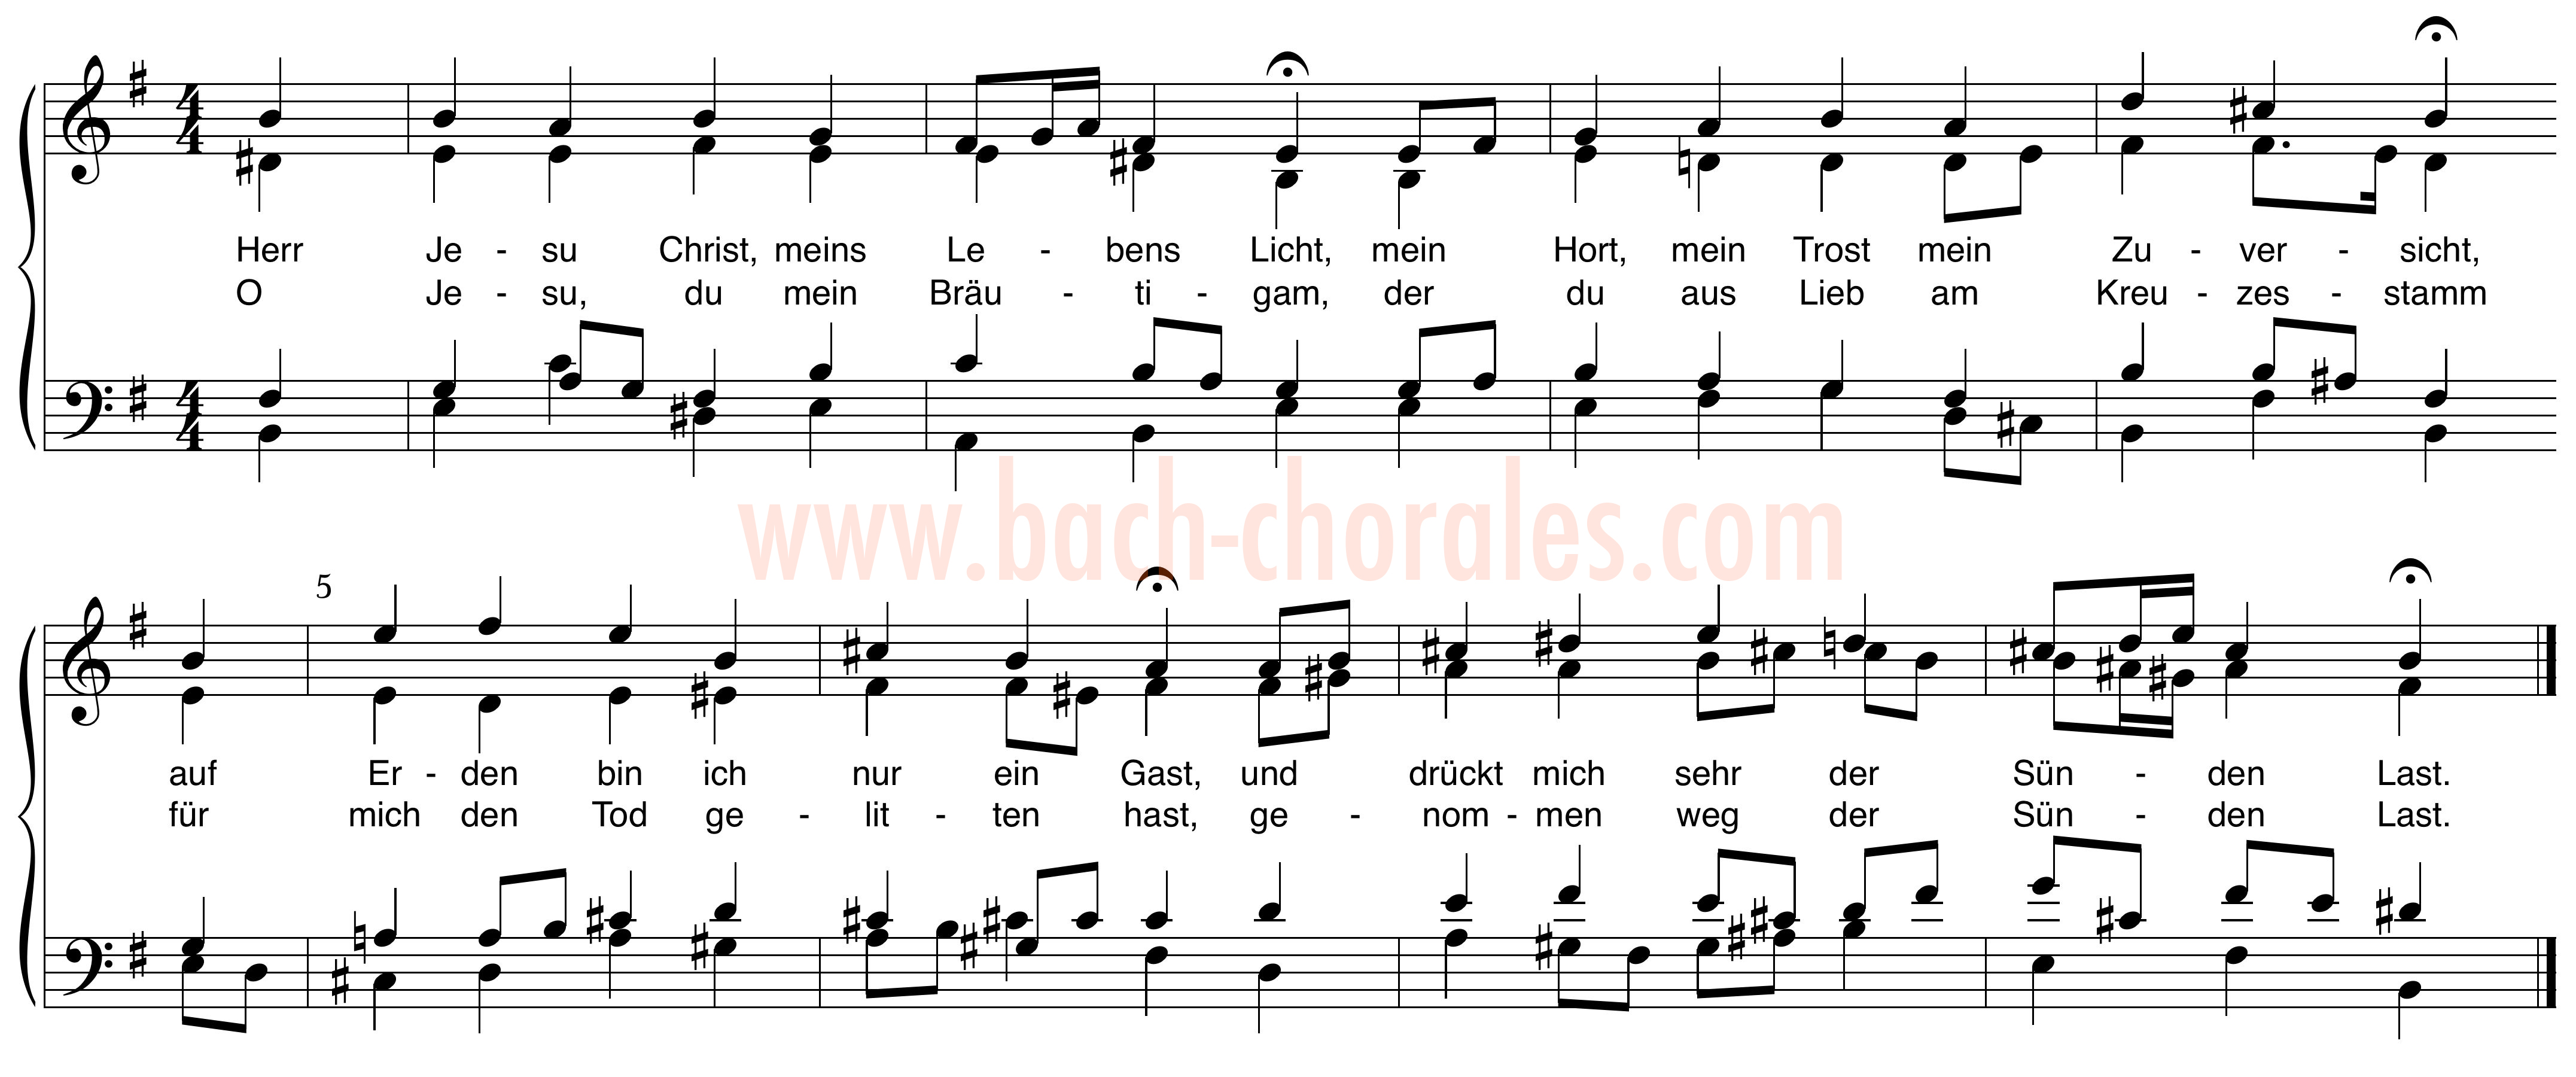 notenbeeld BWV 335 op https://www.bach-chorales.com/